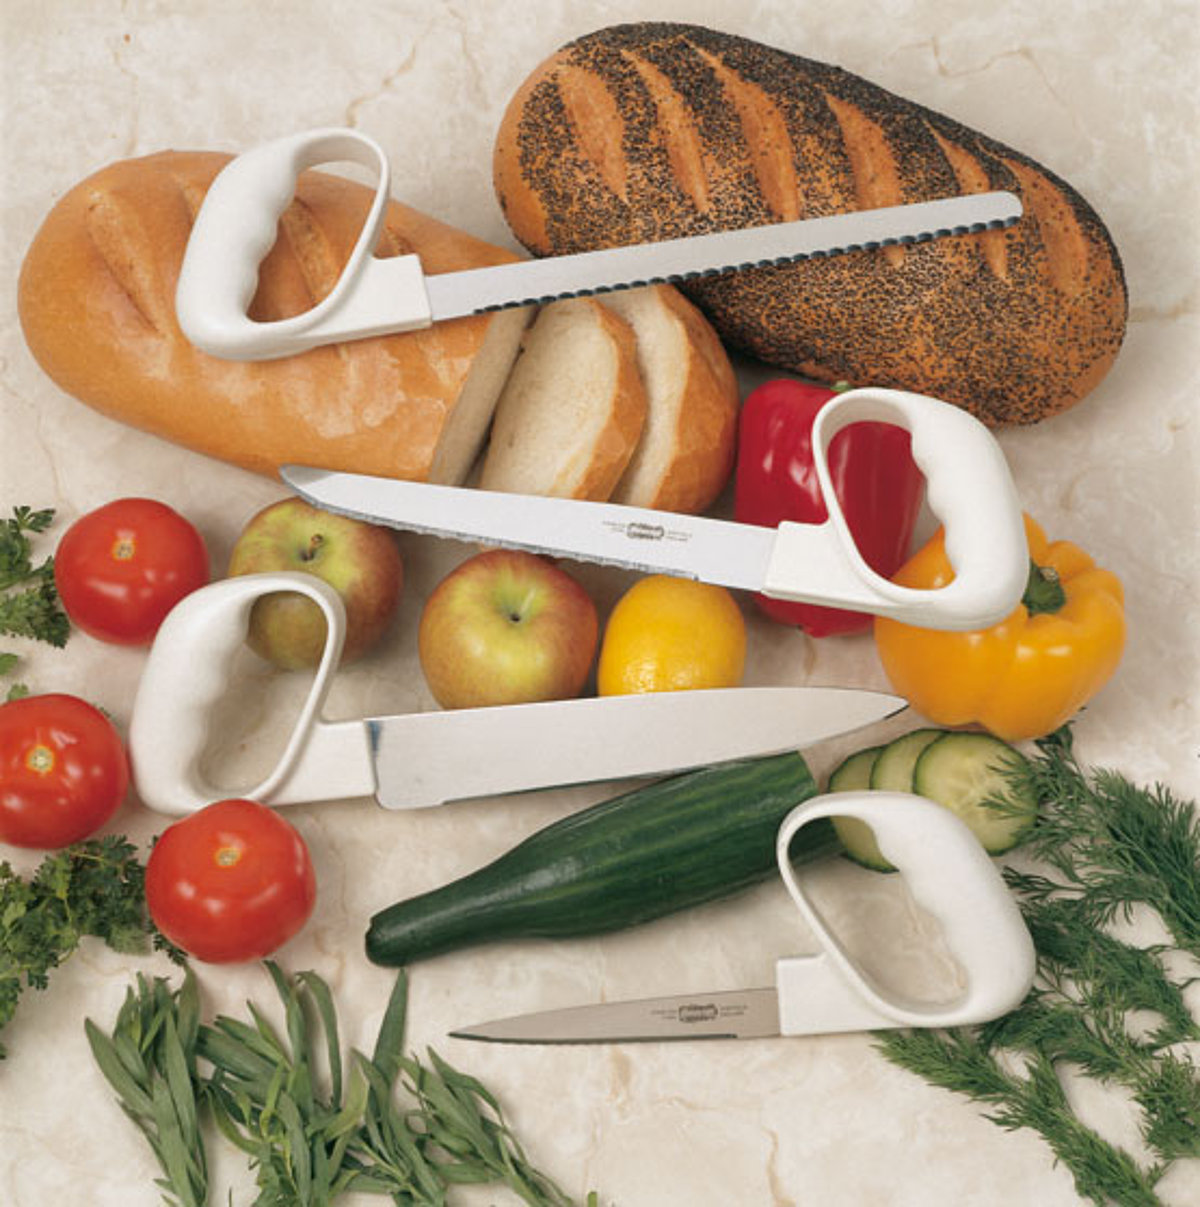 Bild zeigt zwei Brote, Paprika, Tomaten und Gurken. Darauf liegen vier Messer mit Griffverstärkung und unterschiedlichen Klingen.